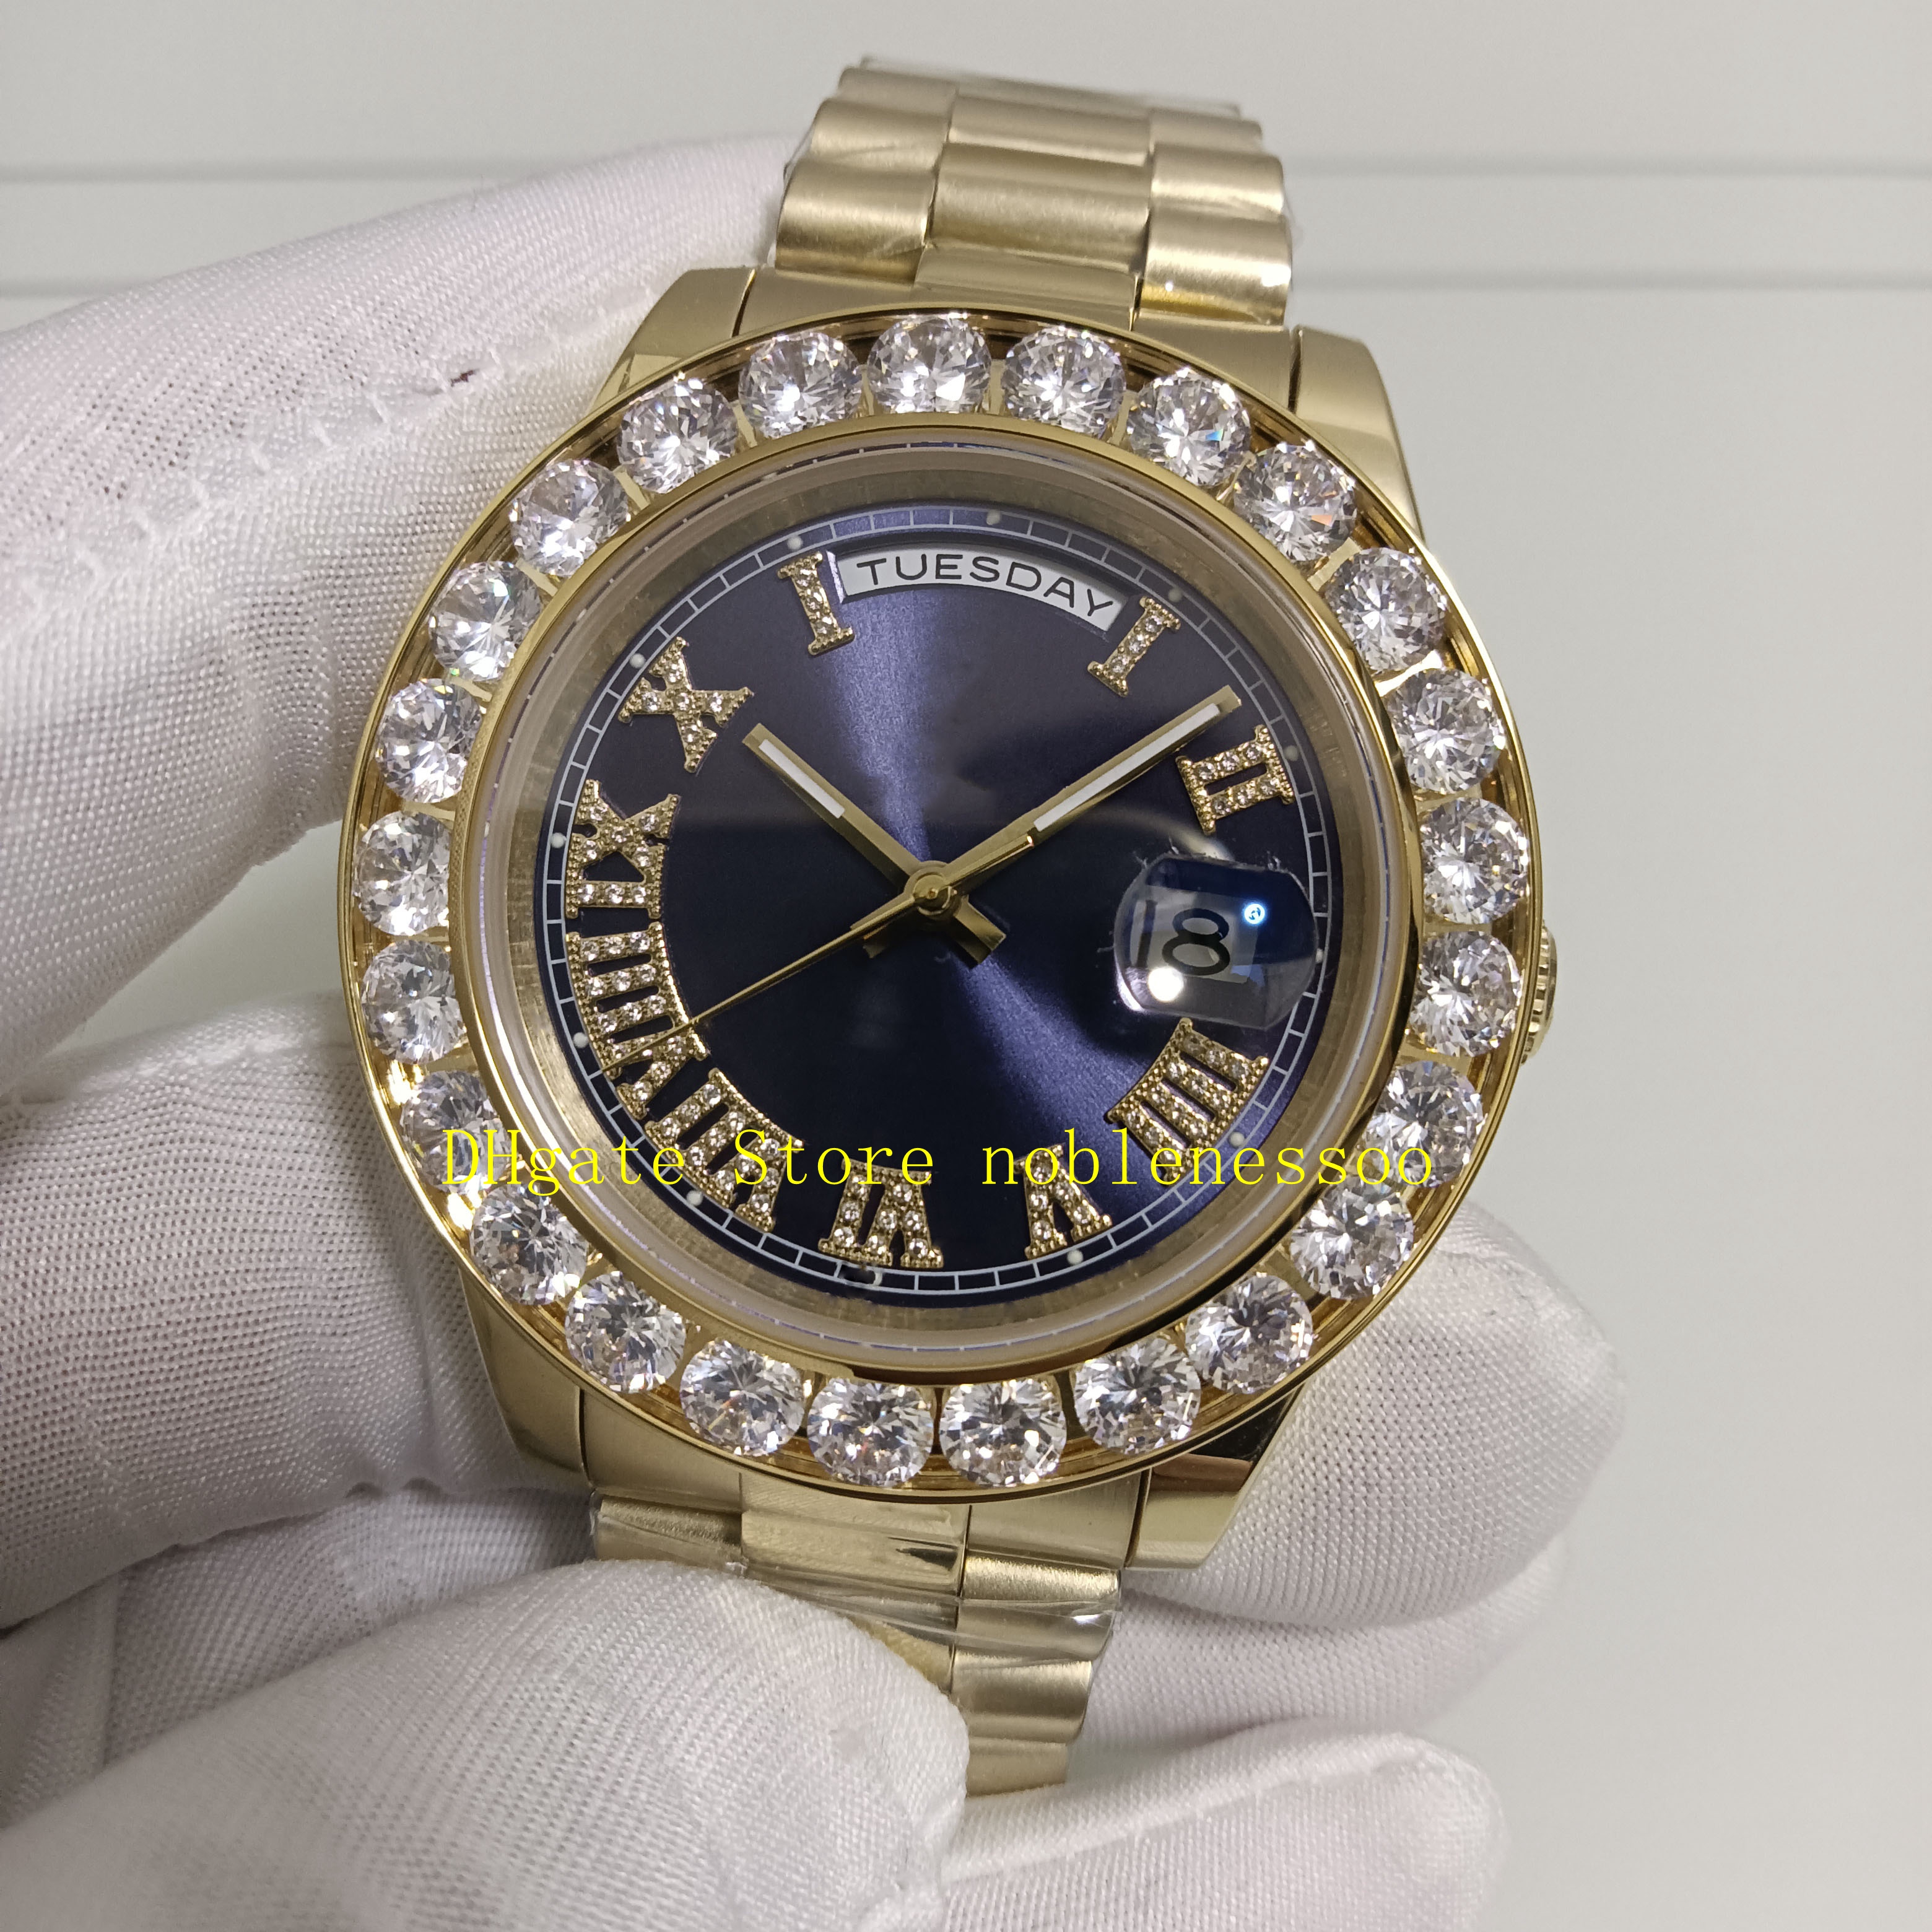 Relógio masculino de ouro amarelo, 5 estilos, real po, com caixa, 43mm, azul, preto, mostrador grande, moldura de diamante, vermelho, azul, verde, ásia 2813, movemen293g